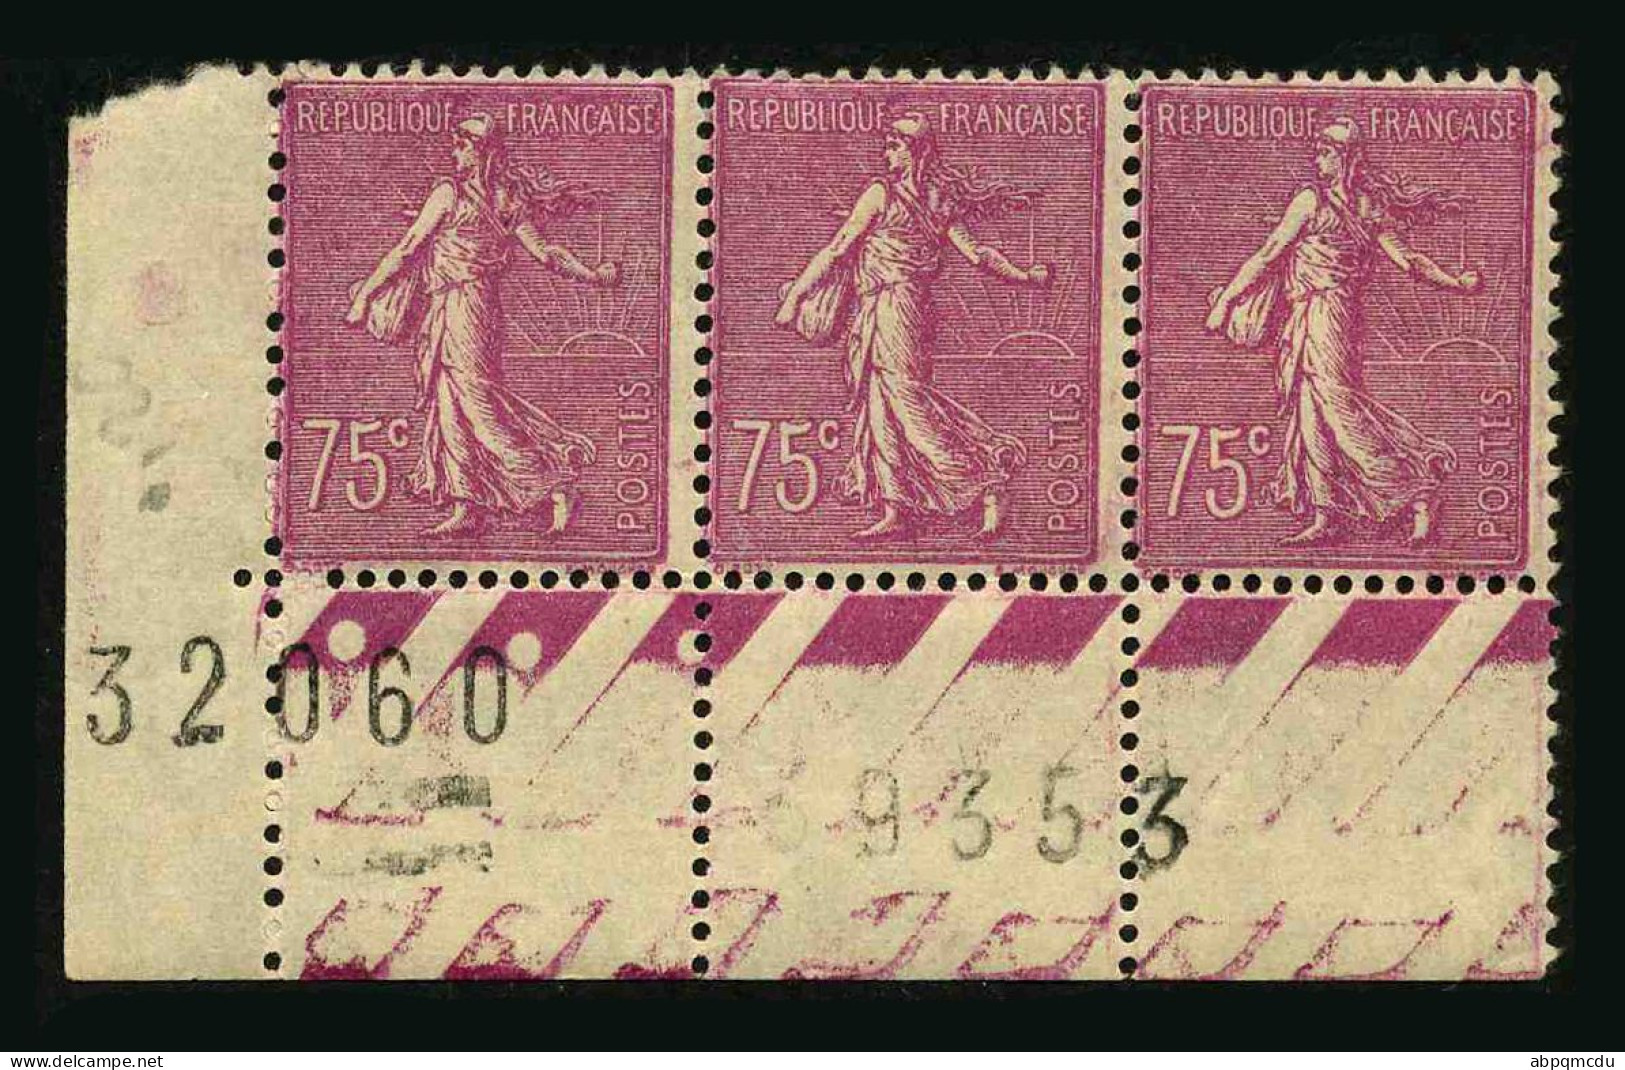 FRANCE - YT 202  Type I - BANDE DE 3 TIMBRES PROVENANT D'UNE FEUILLE DE REMPLACEMENT - Unused Stamps